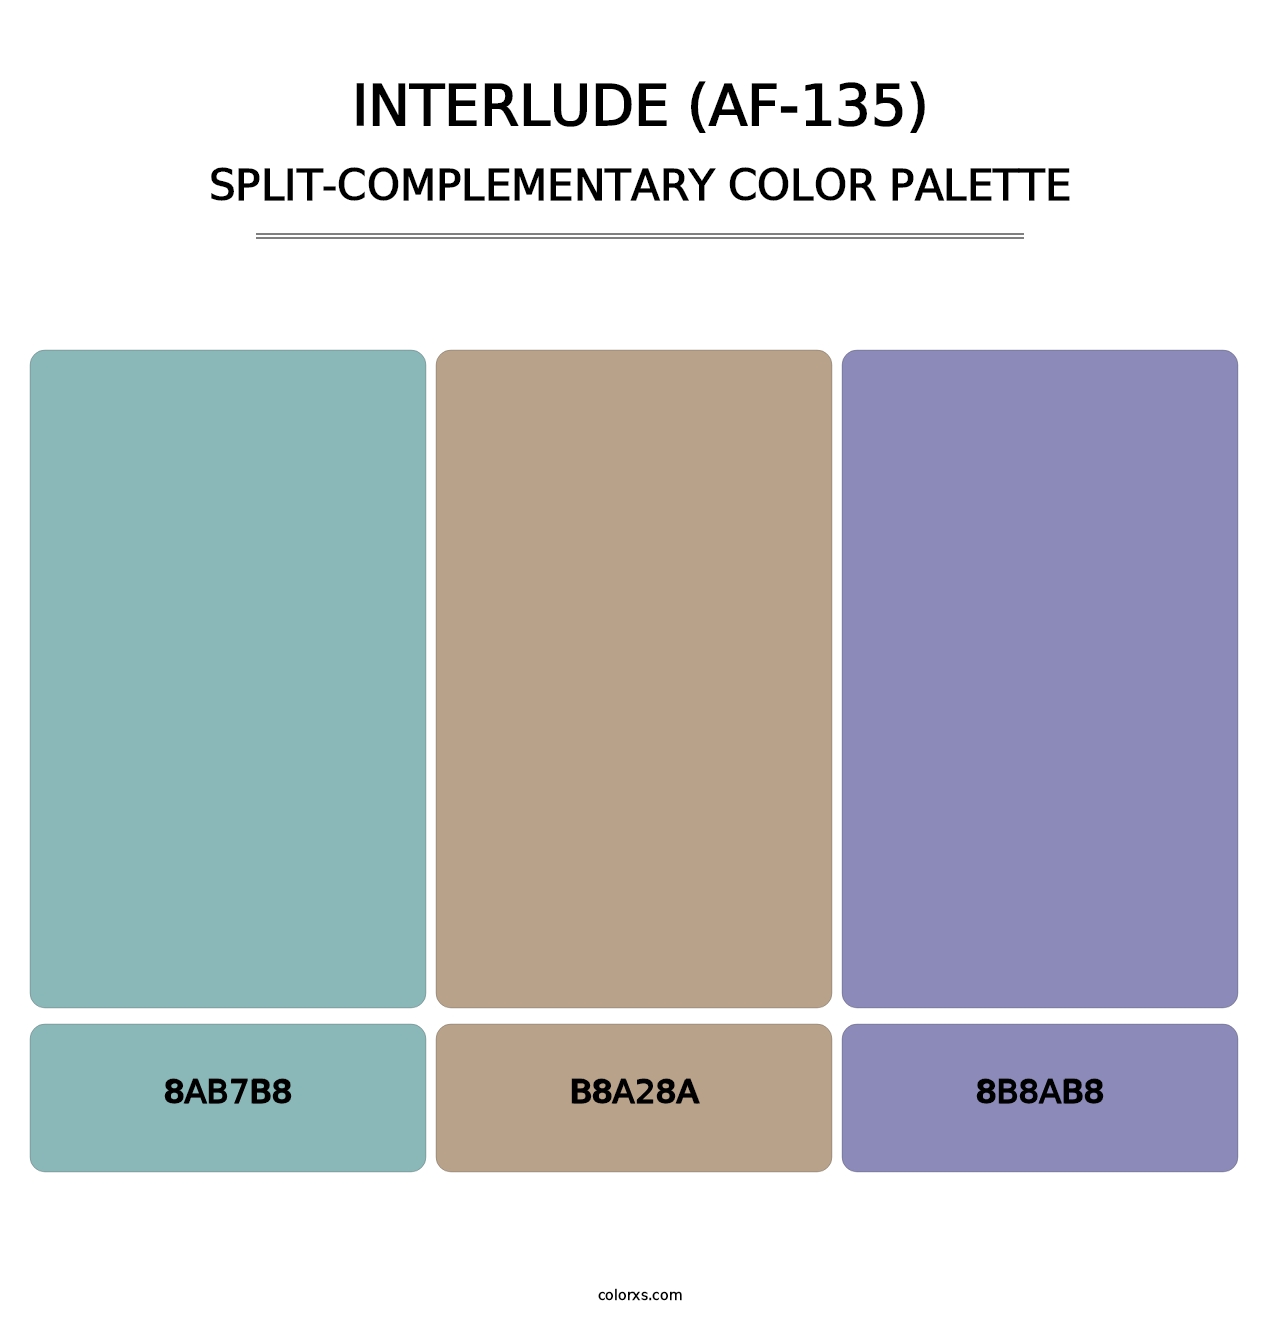 Interlude (AF-135) - Split-Complementary Color Palette